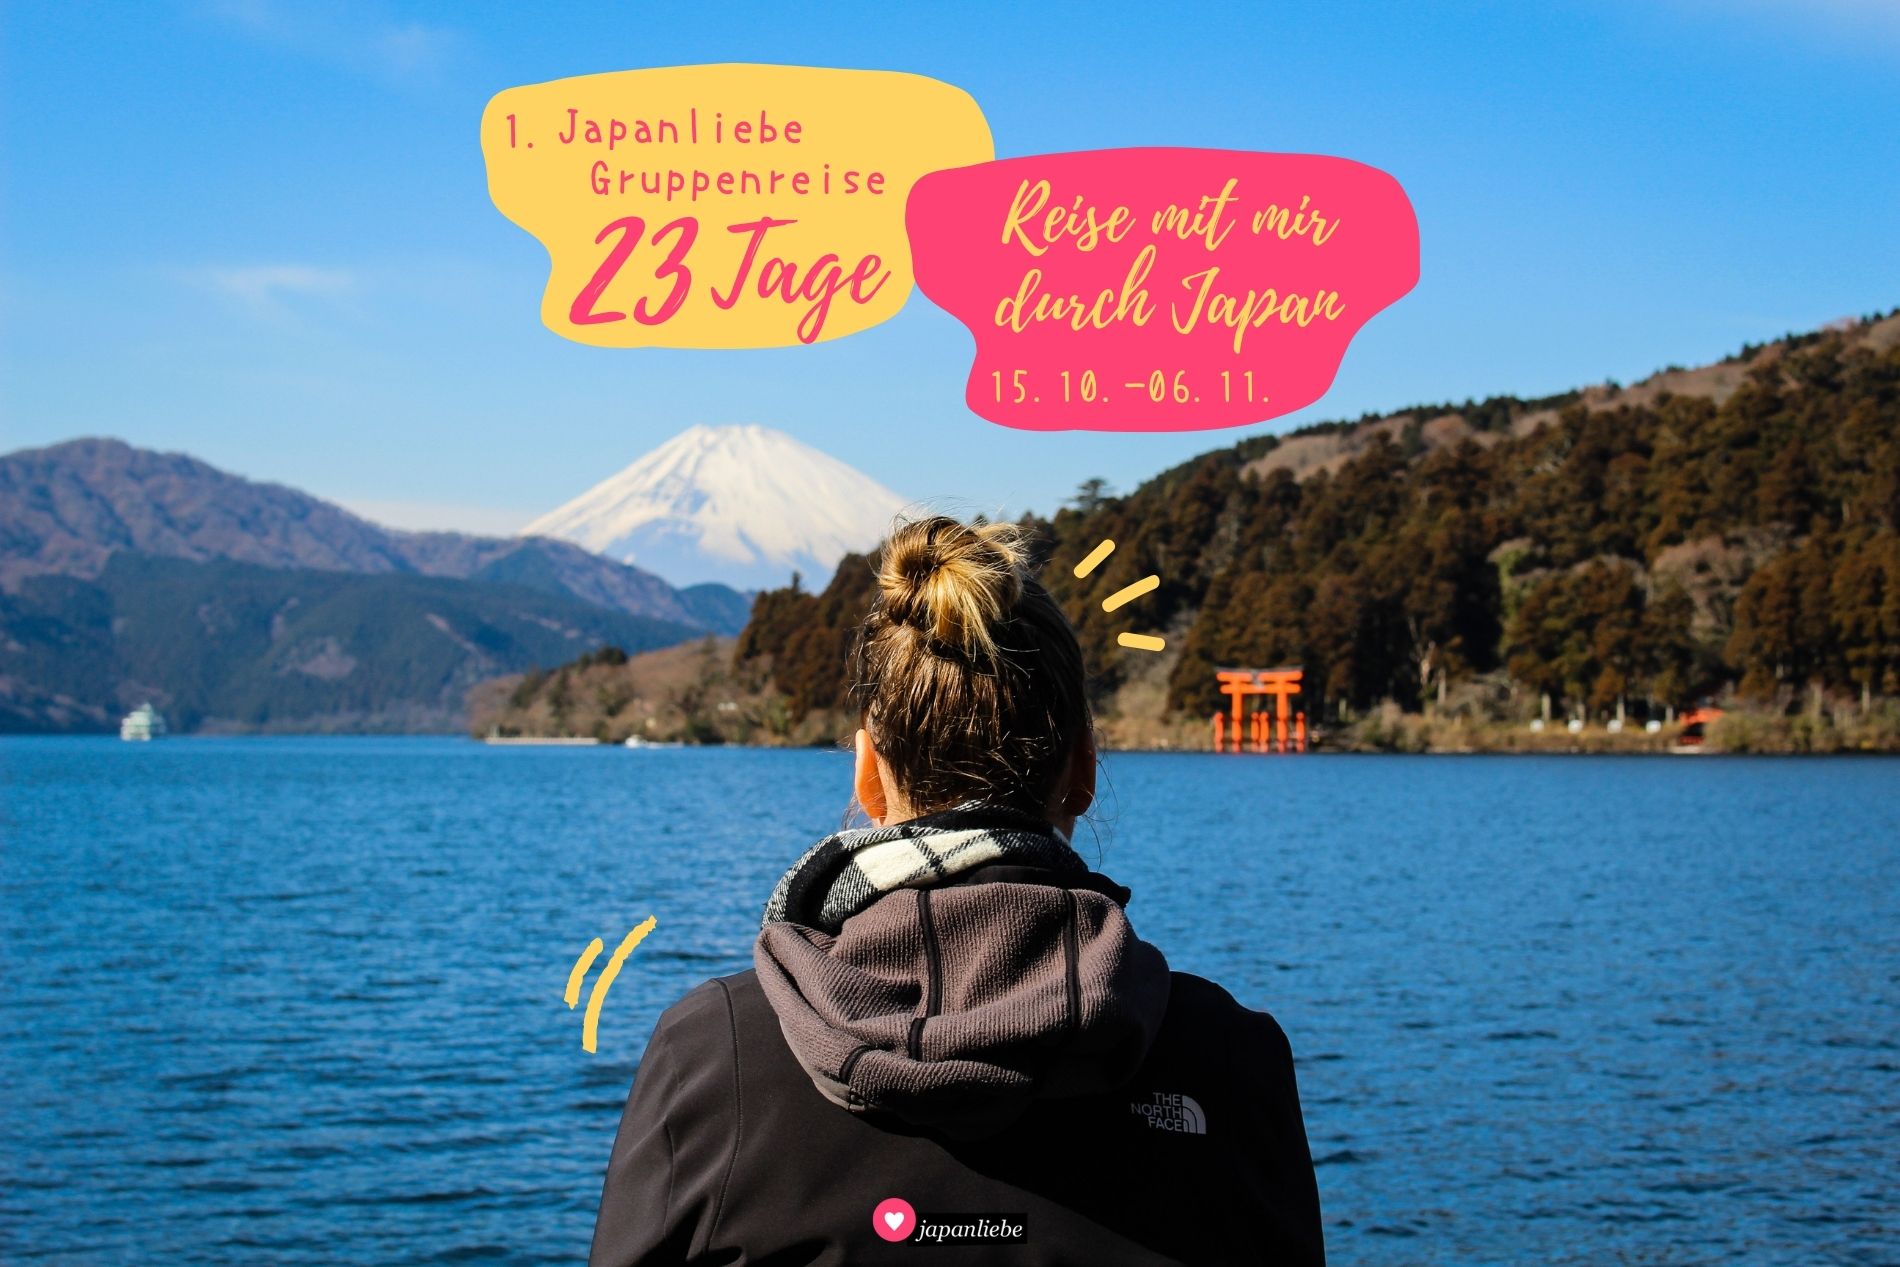 Erkunde insgesamt 23 Tage Japan mit mir als Reiseführerin bei der ersten Japanliebe-Gruppenreise im Herbst 2023.